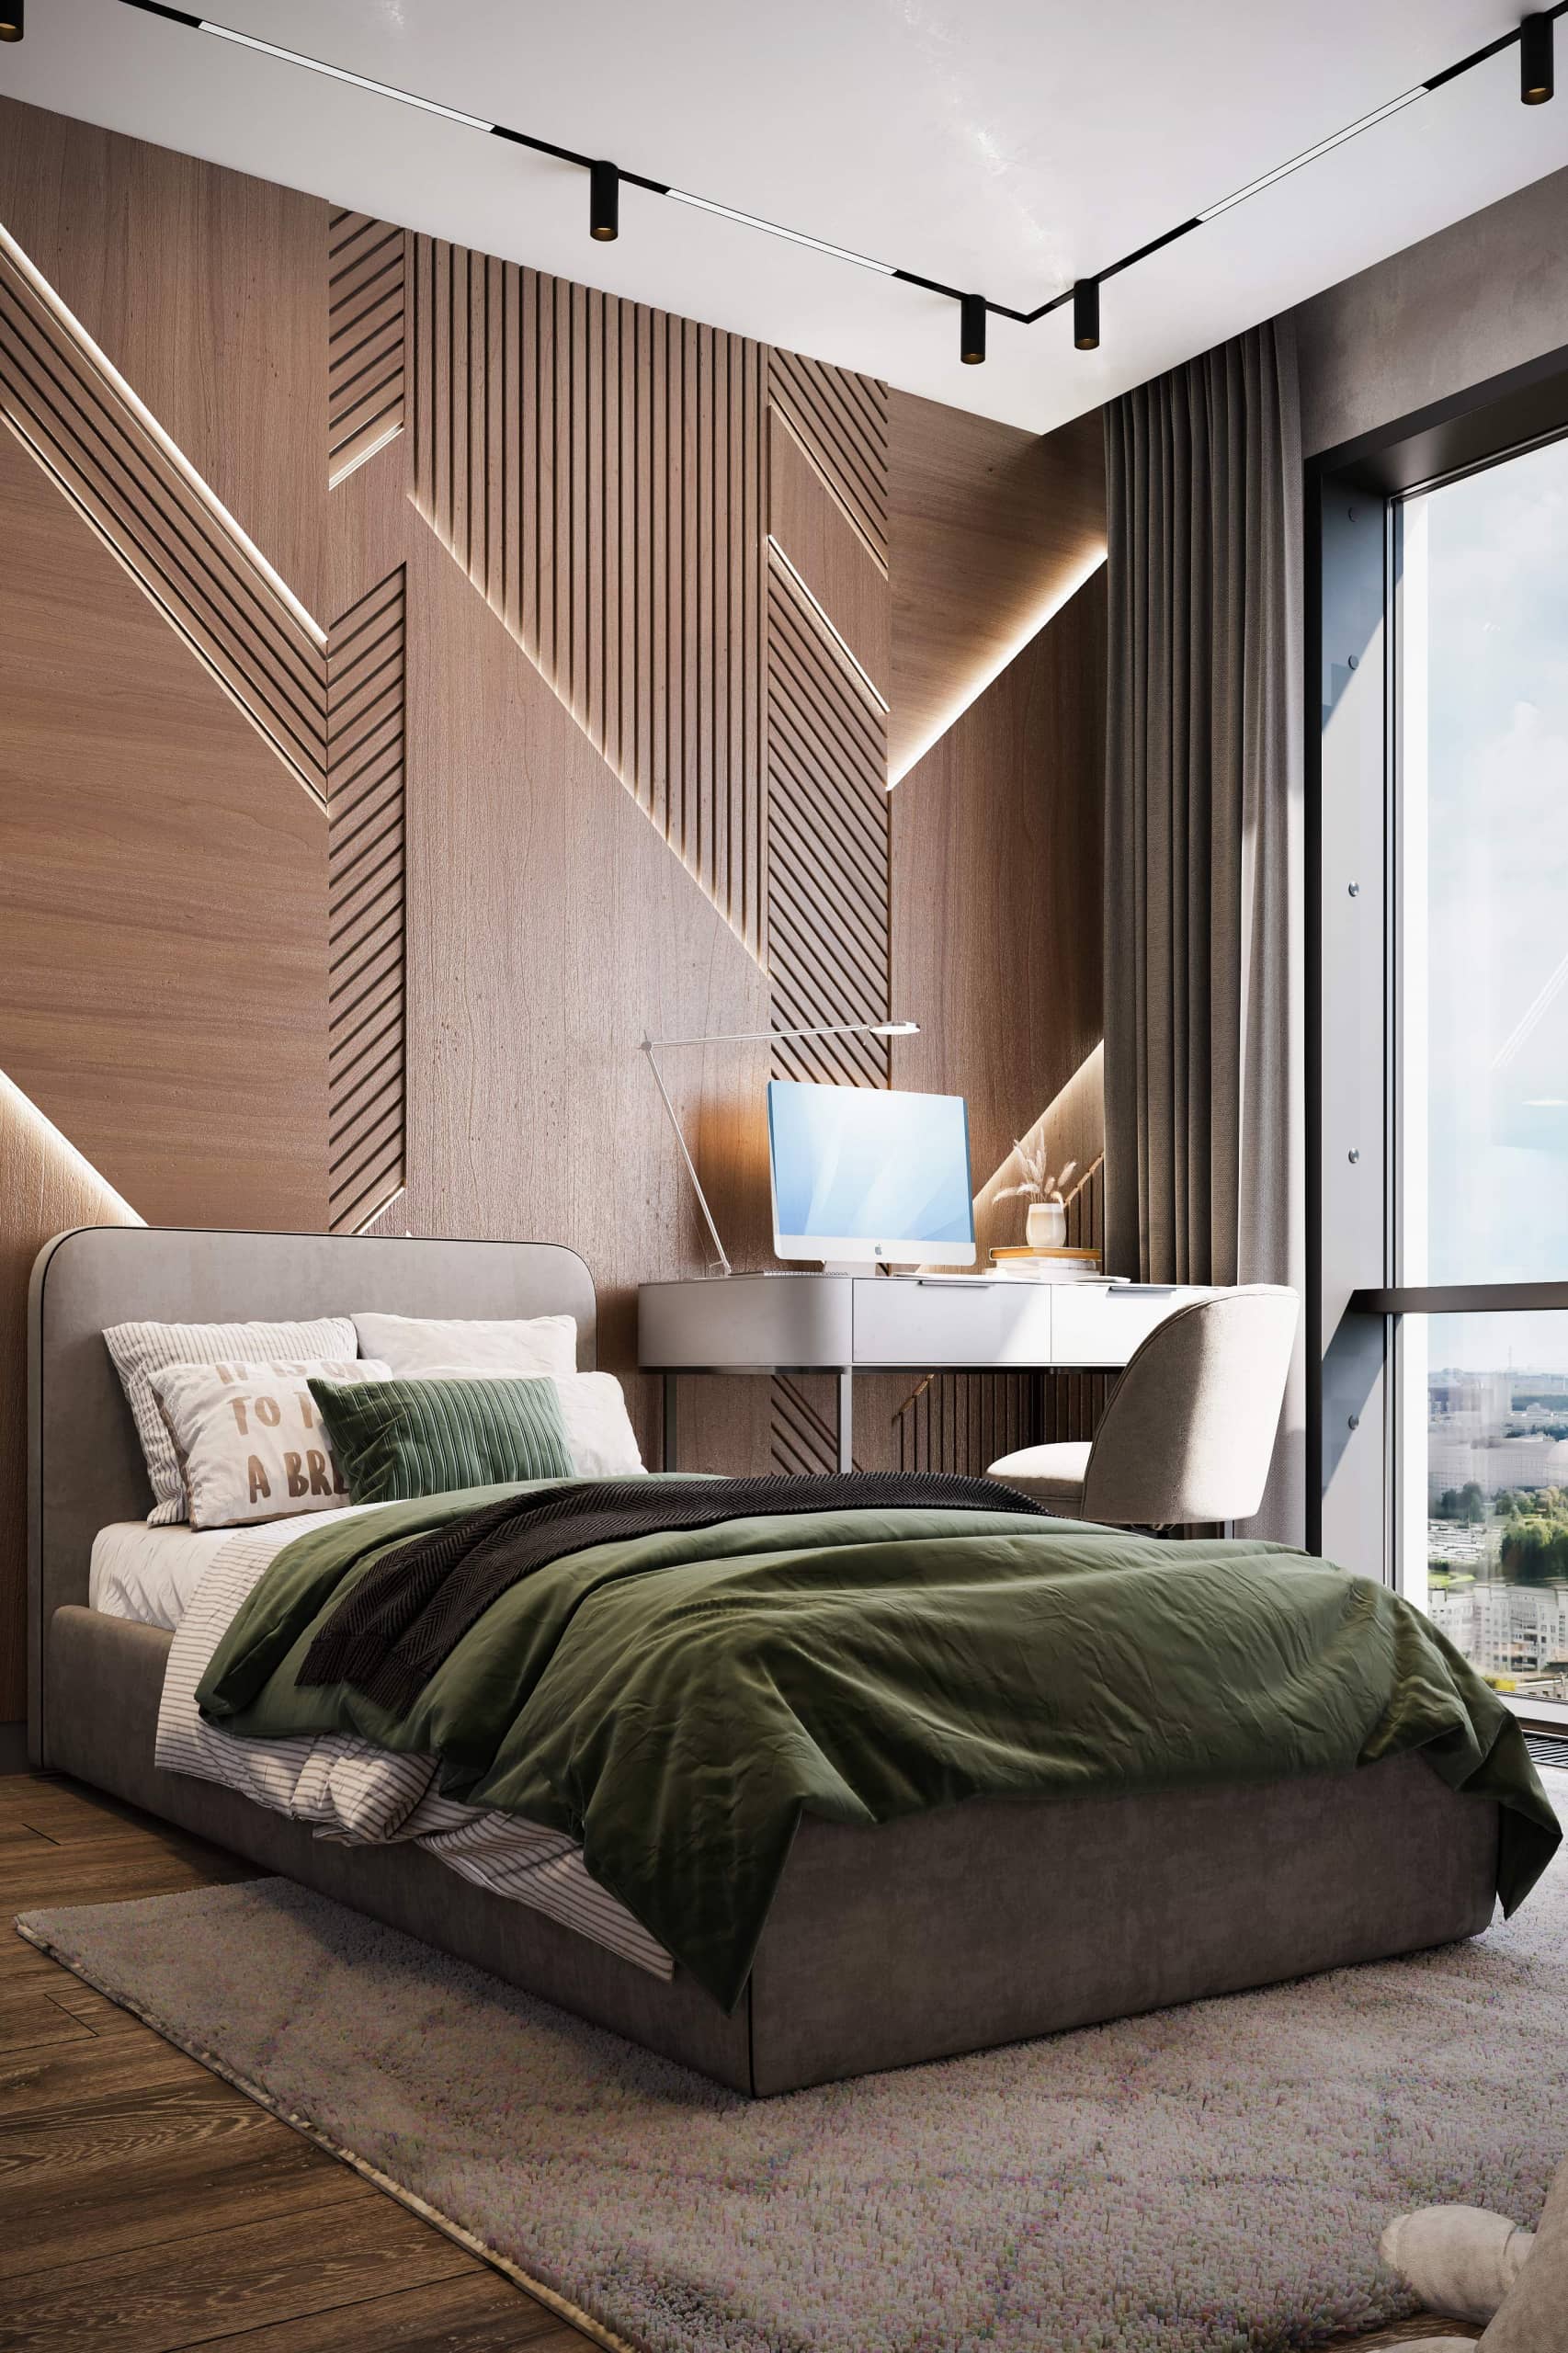 Стена за кроватью декорирована 3D-панелями с ломаной геометрией и подсветкой